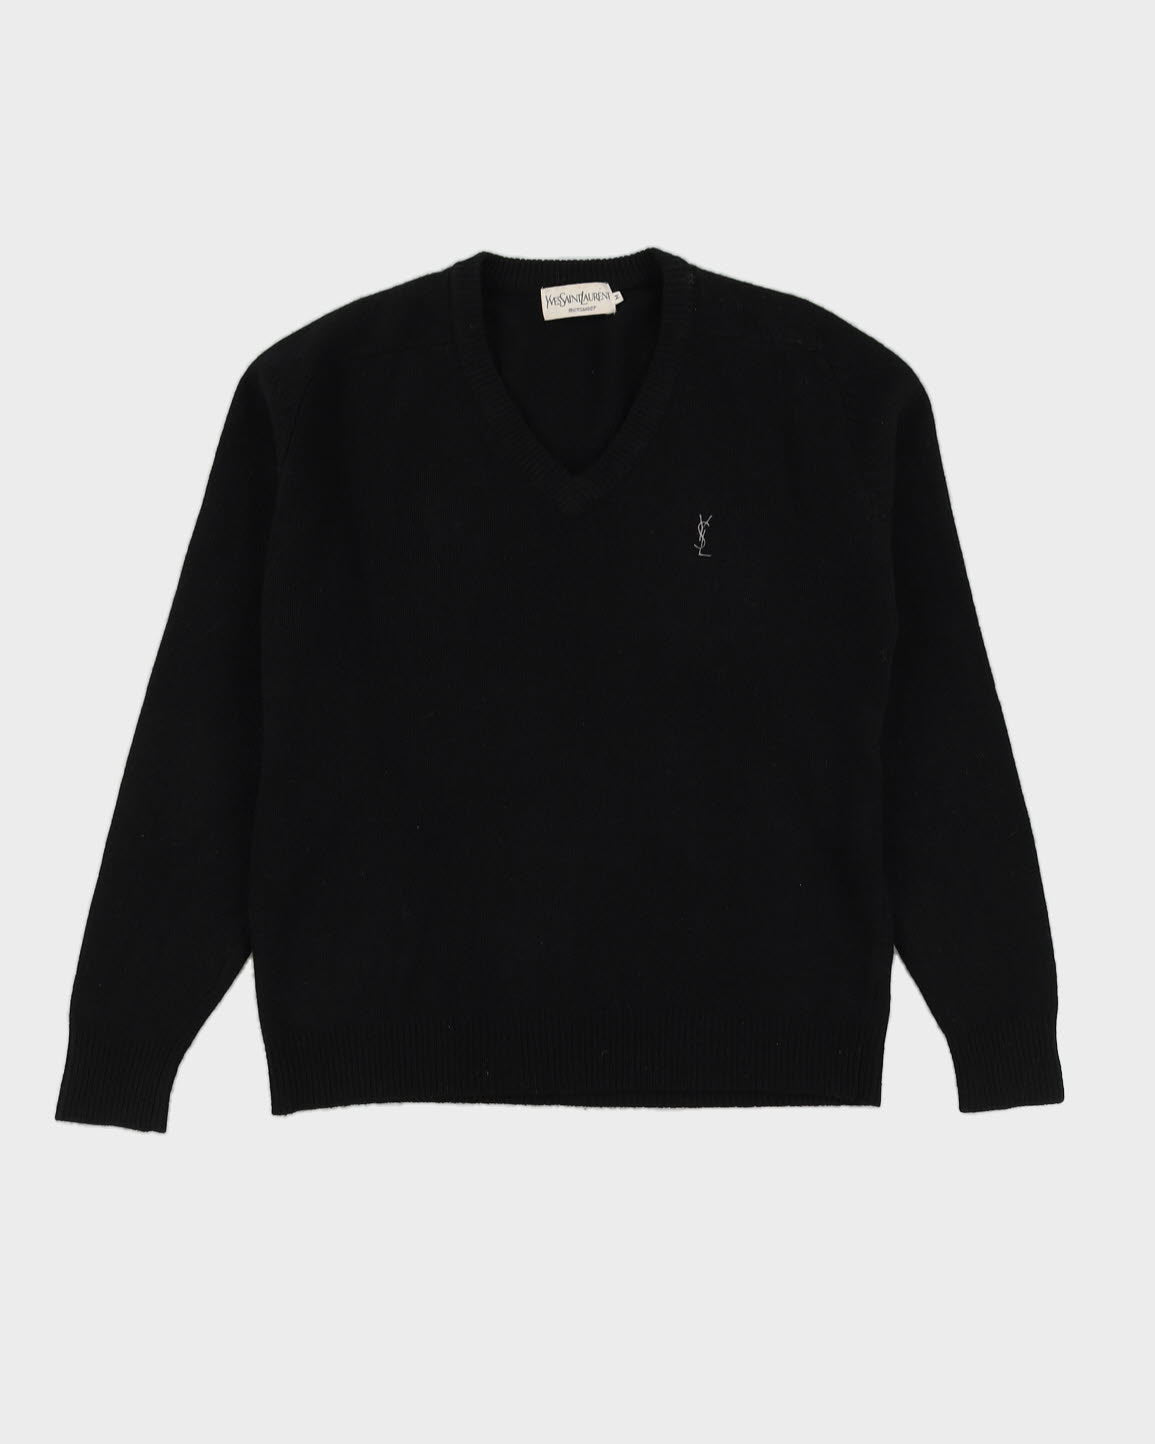 YSL Menswear Black Knitted Jumper - L